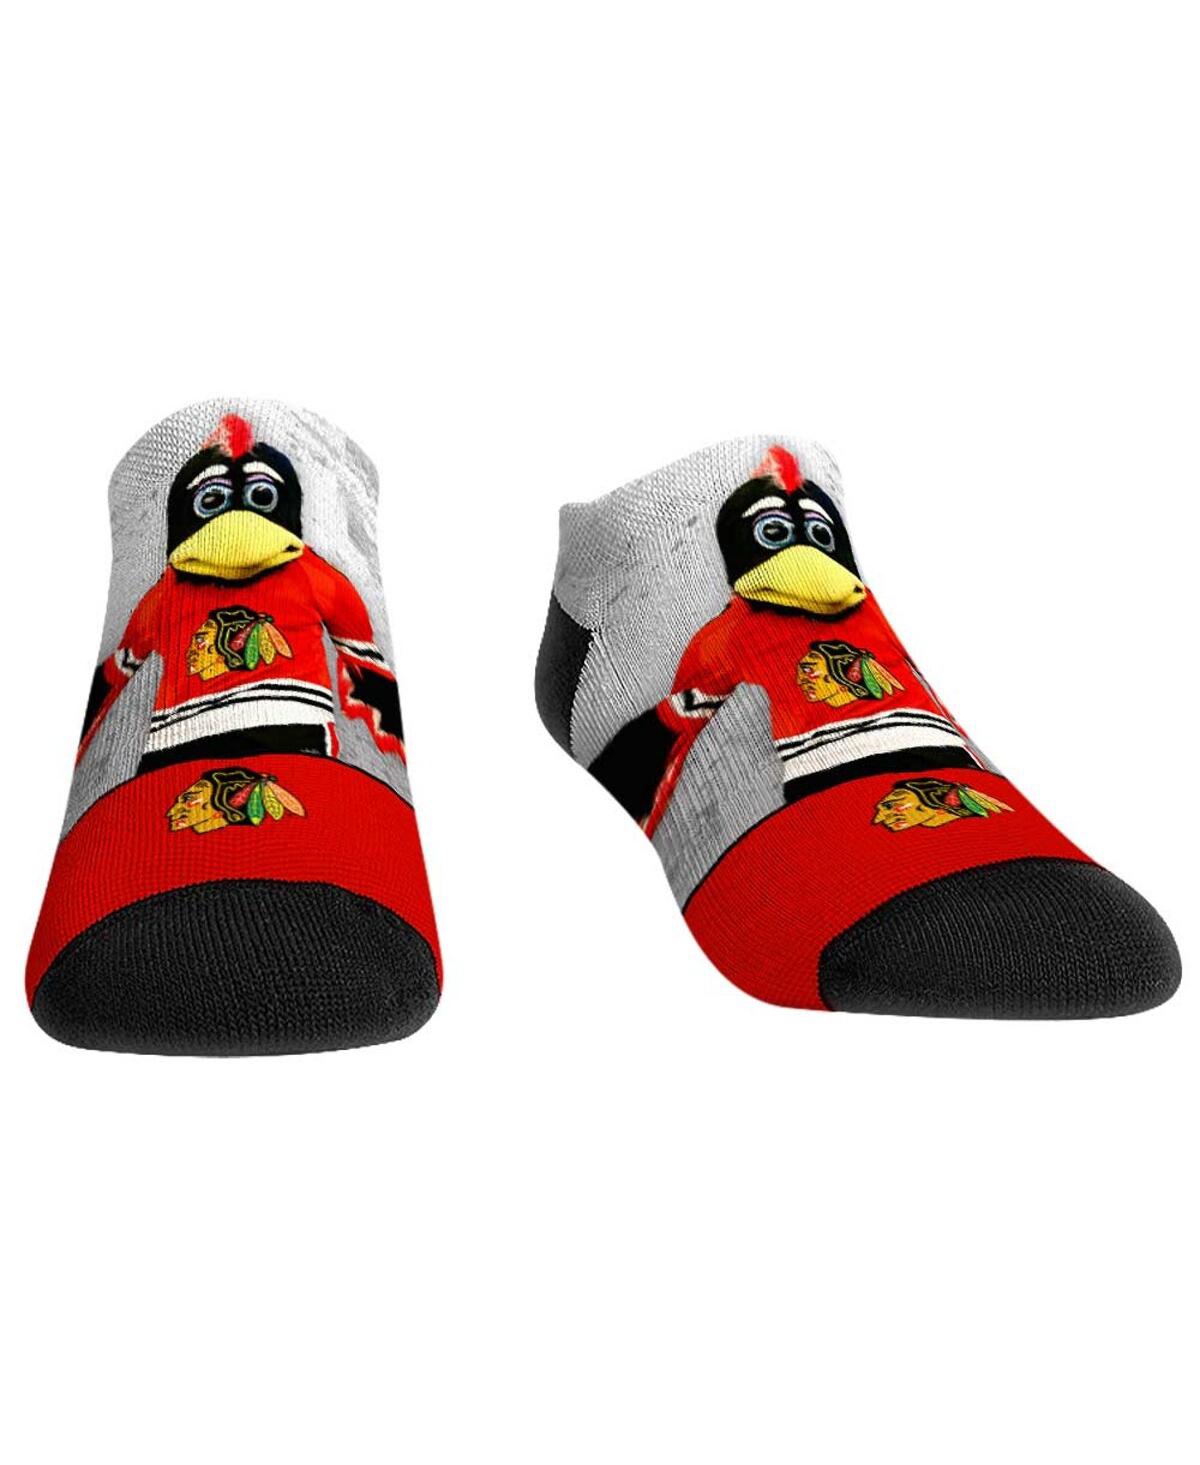 Rock 'em Men's And Women's  Socks Chicago Blackhawks Mascot Walkout Low Cut Socks In Red